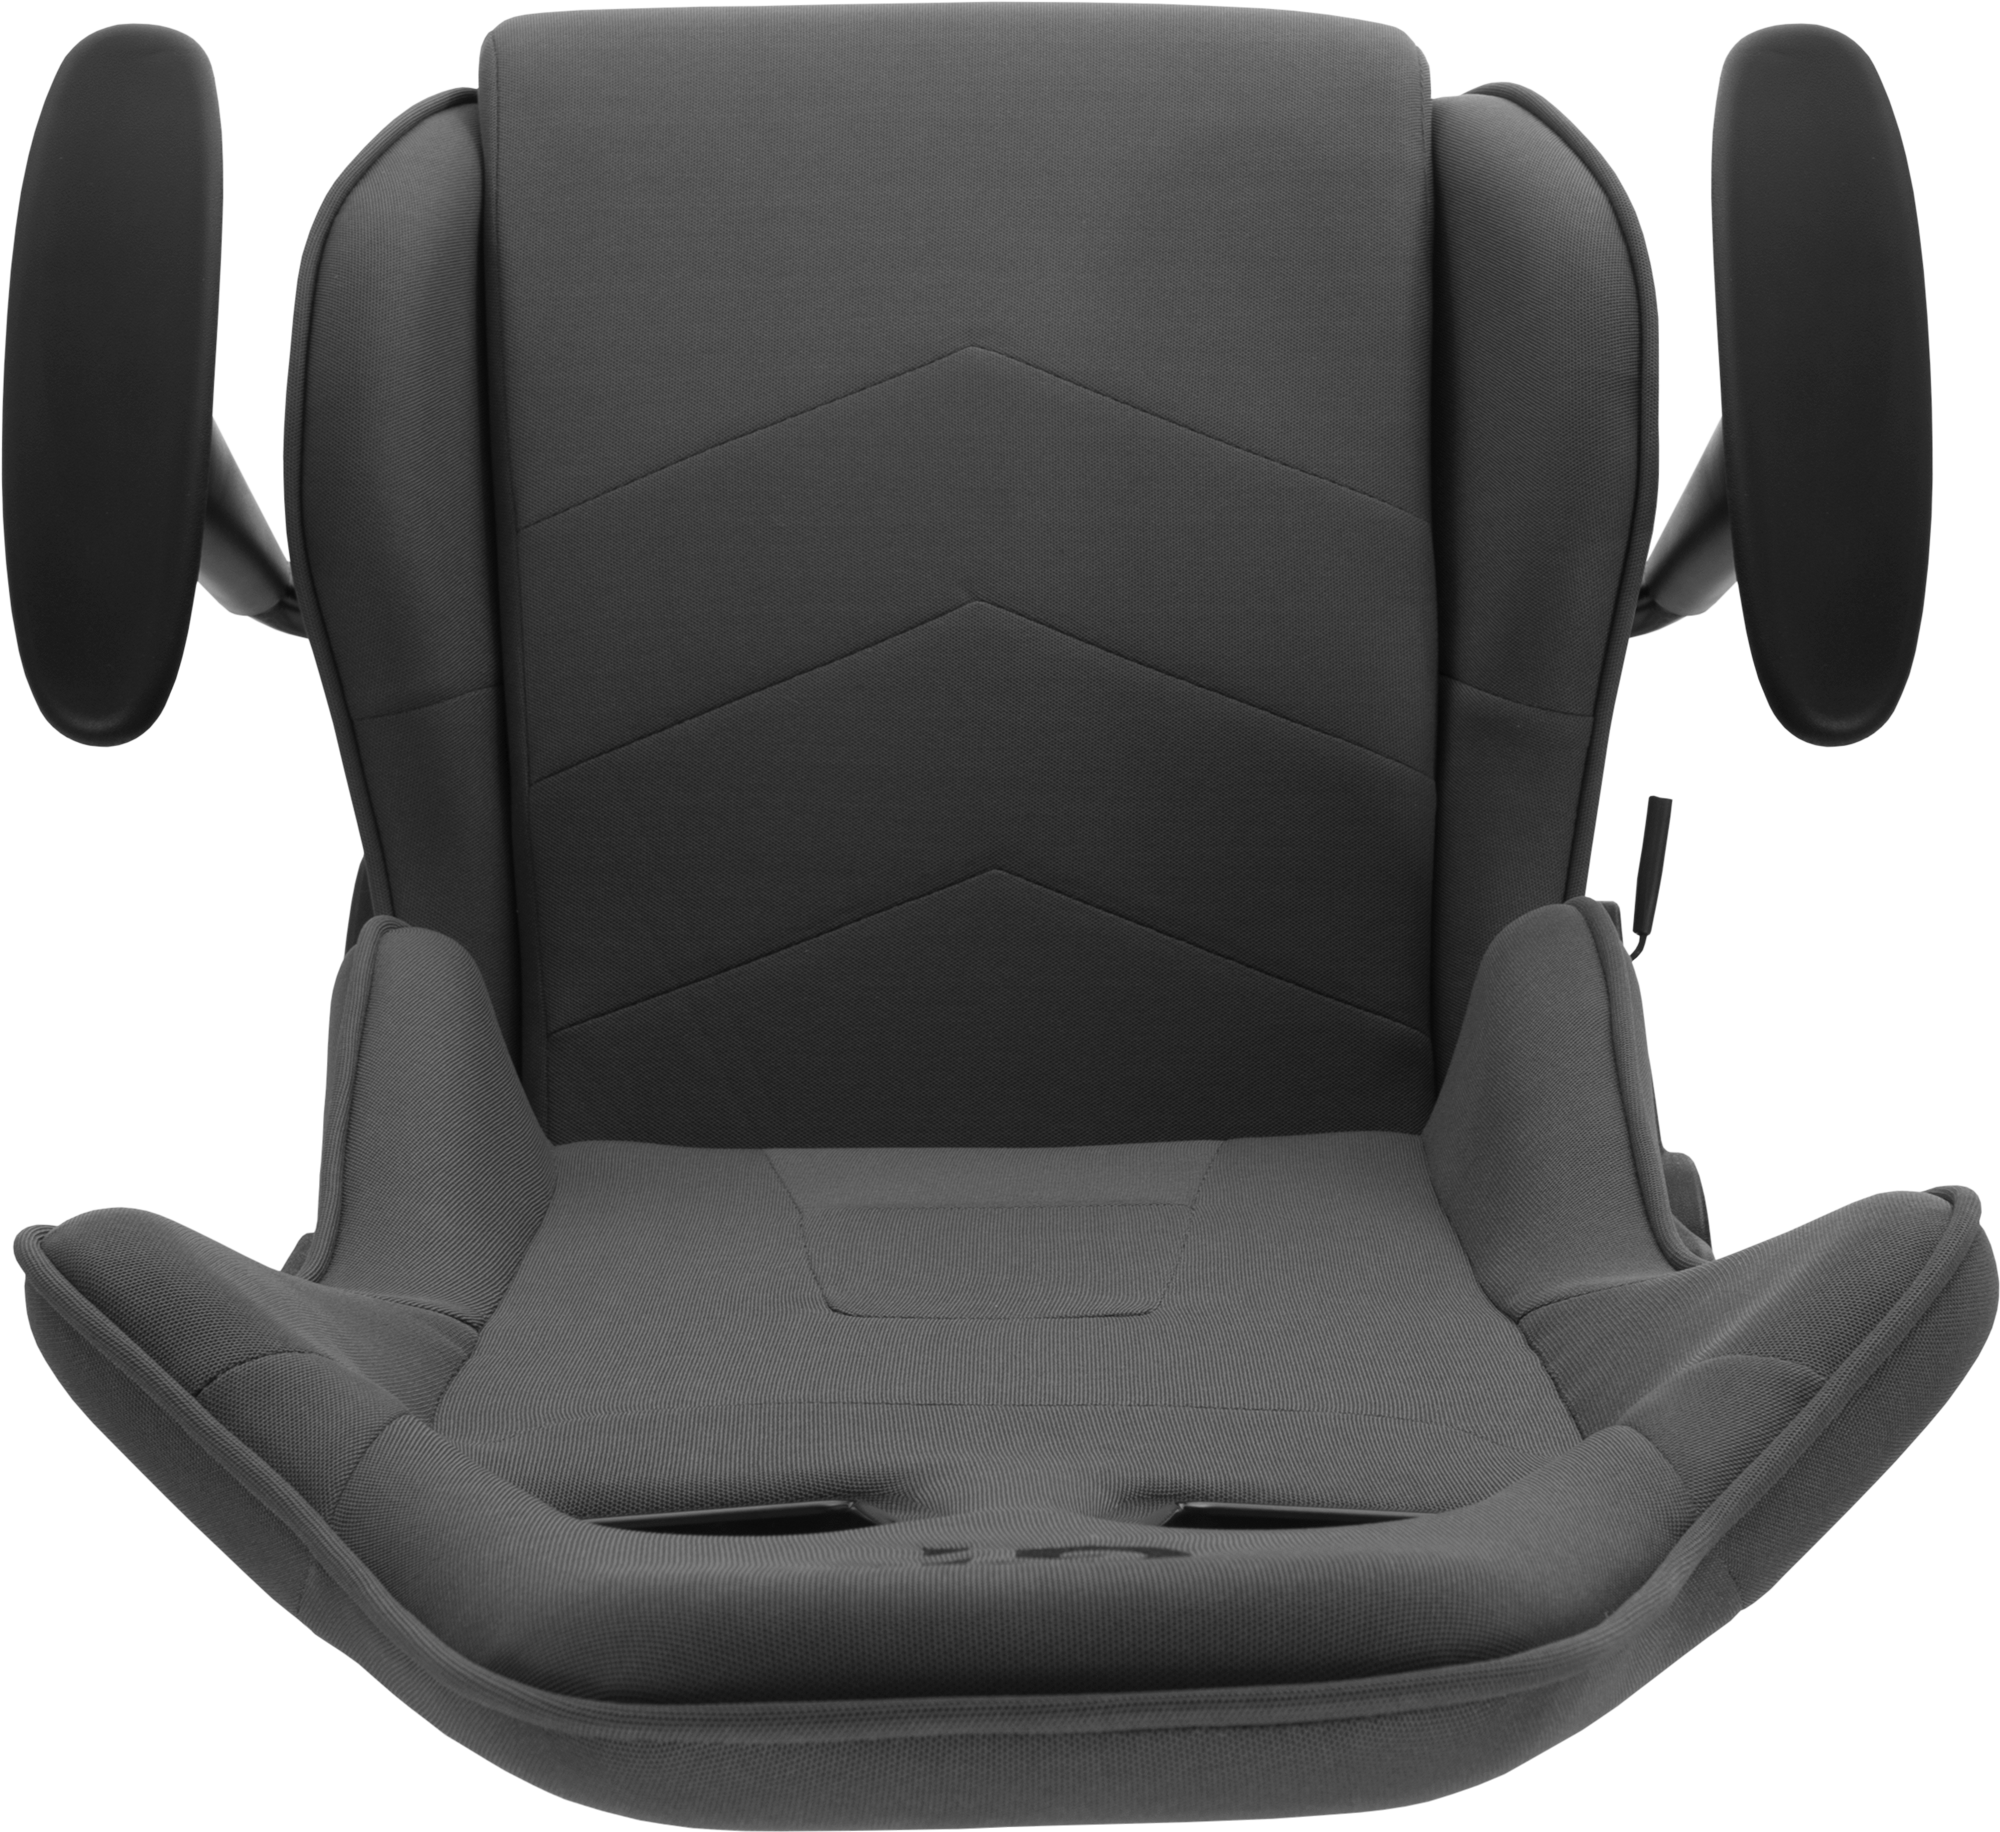 Геймерское кресло GT Racer темно-серое (X-2316 Dark Gray) - фото 11